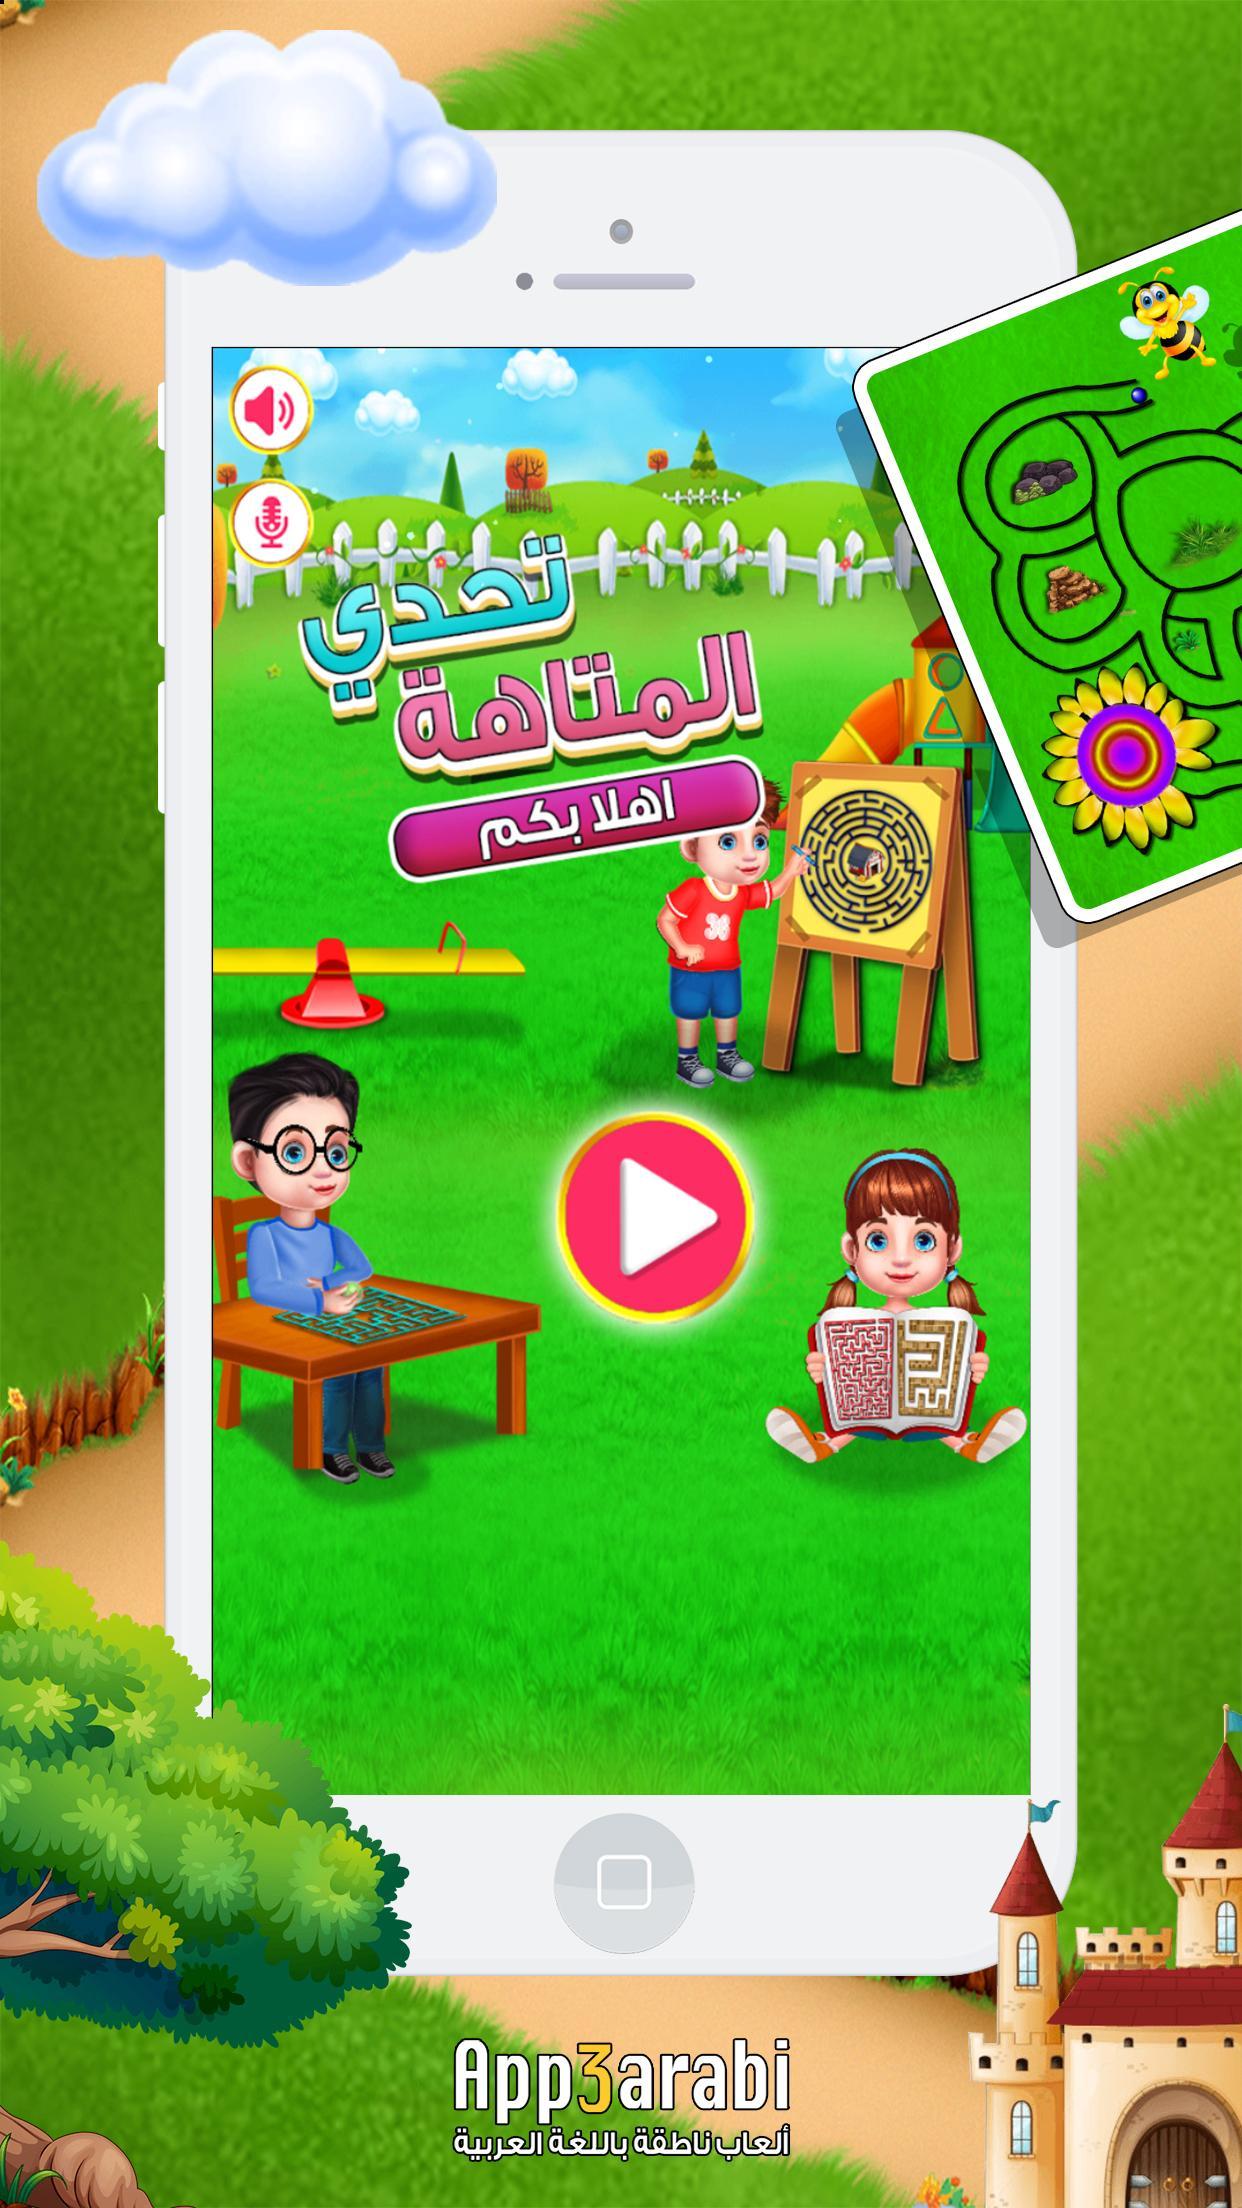 العاب اطفال عربي - اختبار المتاهة لعبة ذكاء اطفال for Android - APK Download